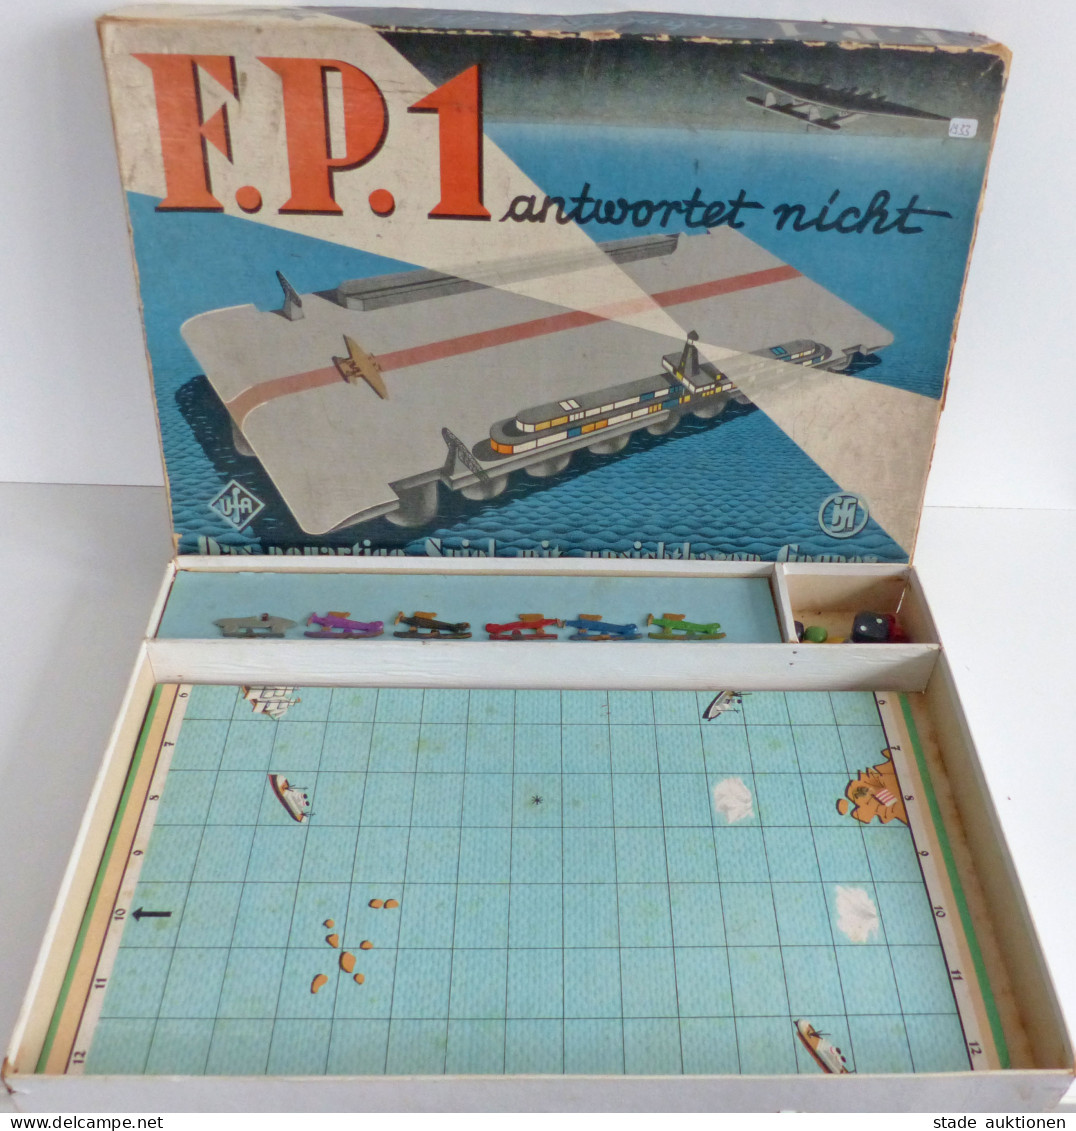 Spielzeug F.P.1 Antwortet Nicht Das Neuartige Spiel Mit Unsichtbaren Gegnern Von 1933, Originalverpackung 1 Flugzeug Feh - Spielzeug & Spiele